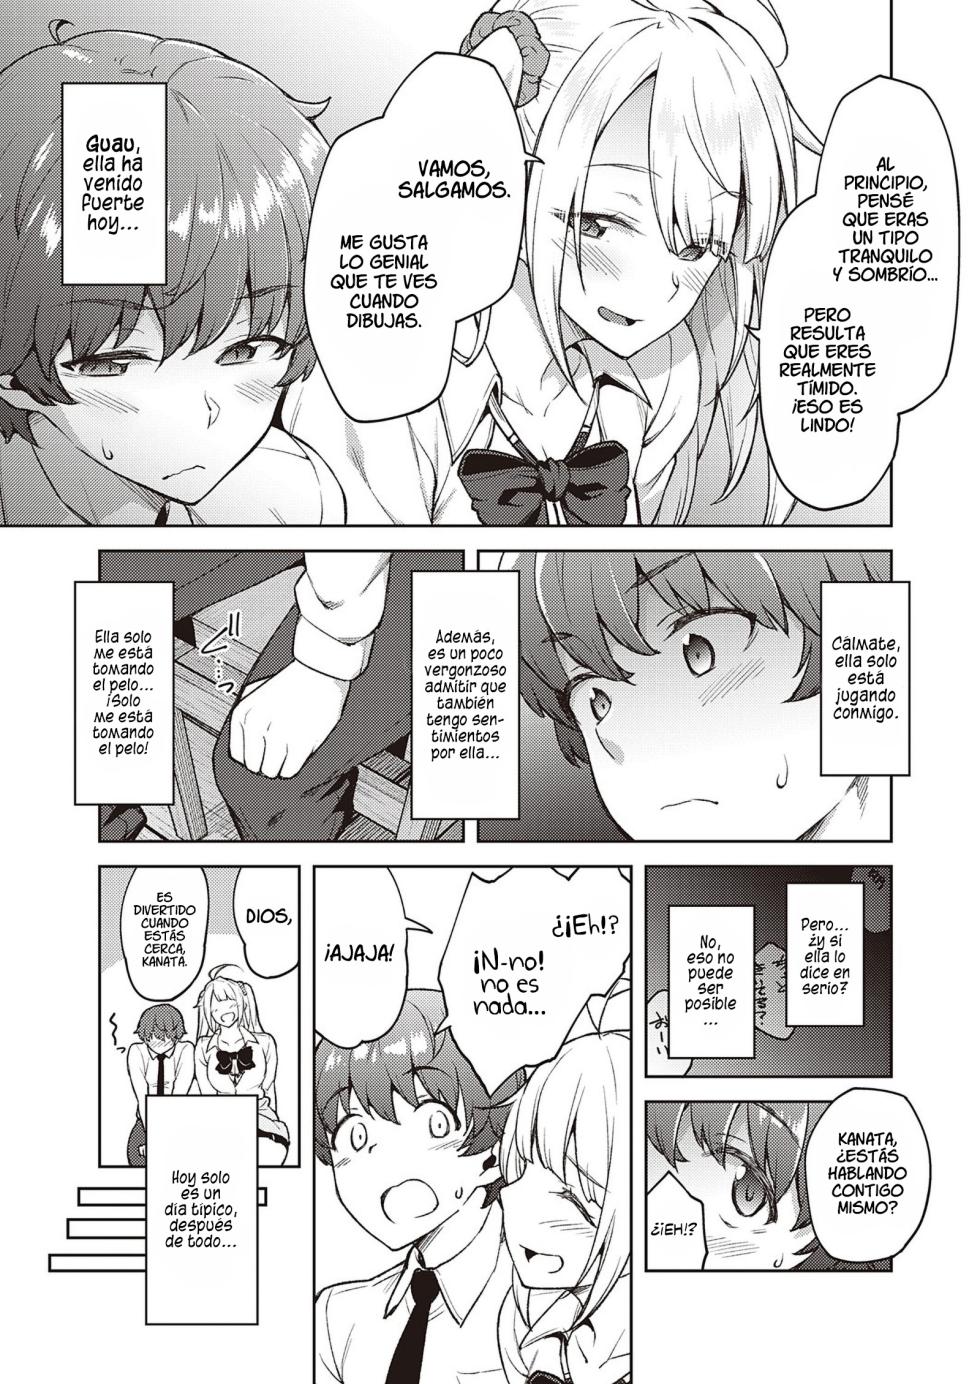 Por favor no me molestes, Tachibana-san - Page 5